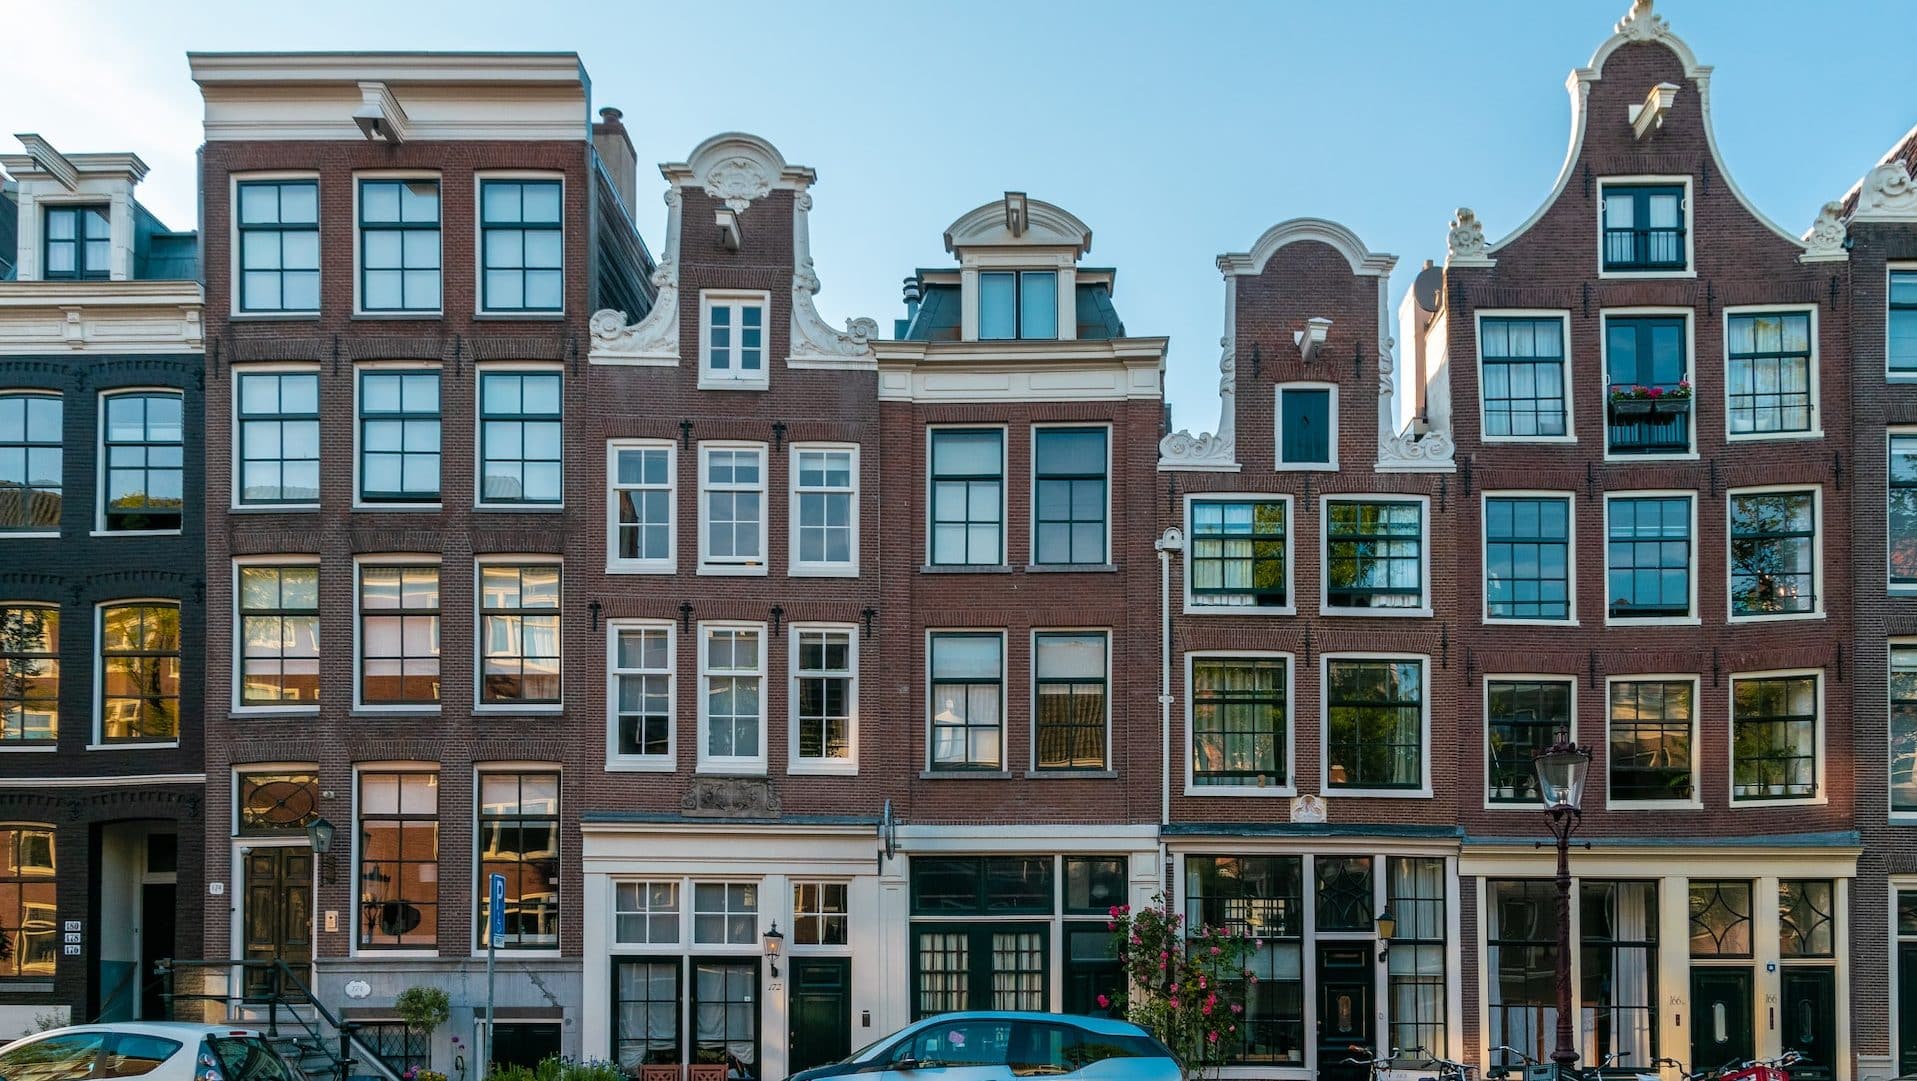 Arquitectura típica de estilo holandés en el barrio de Jordaan